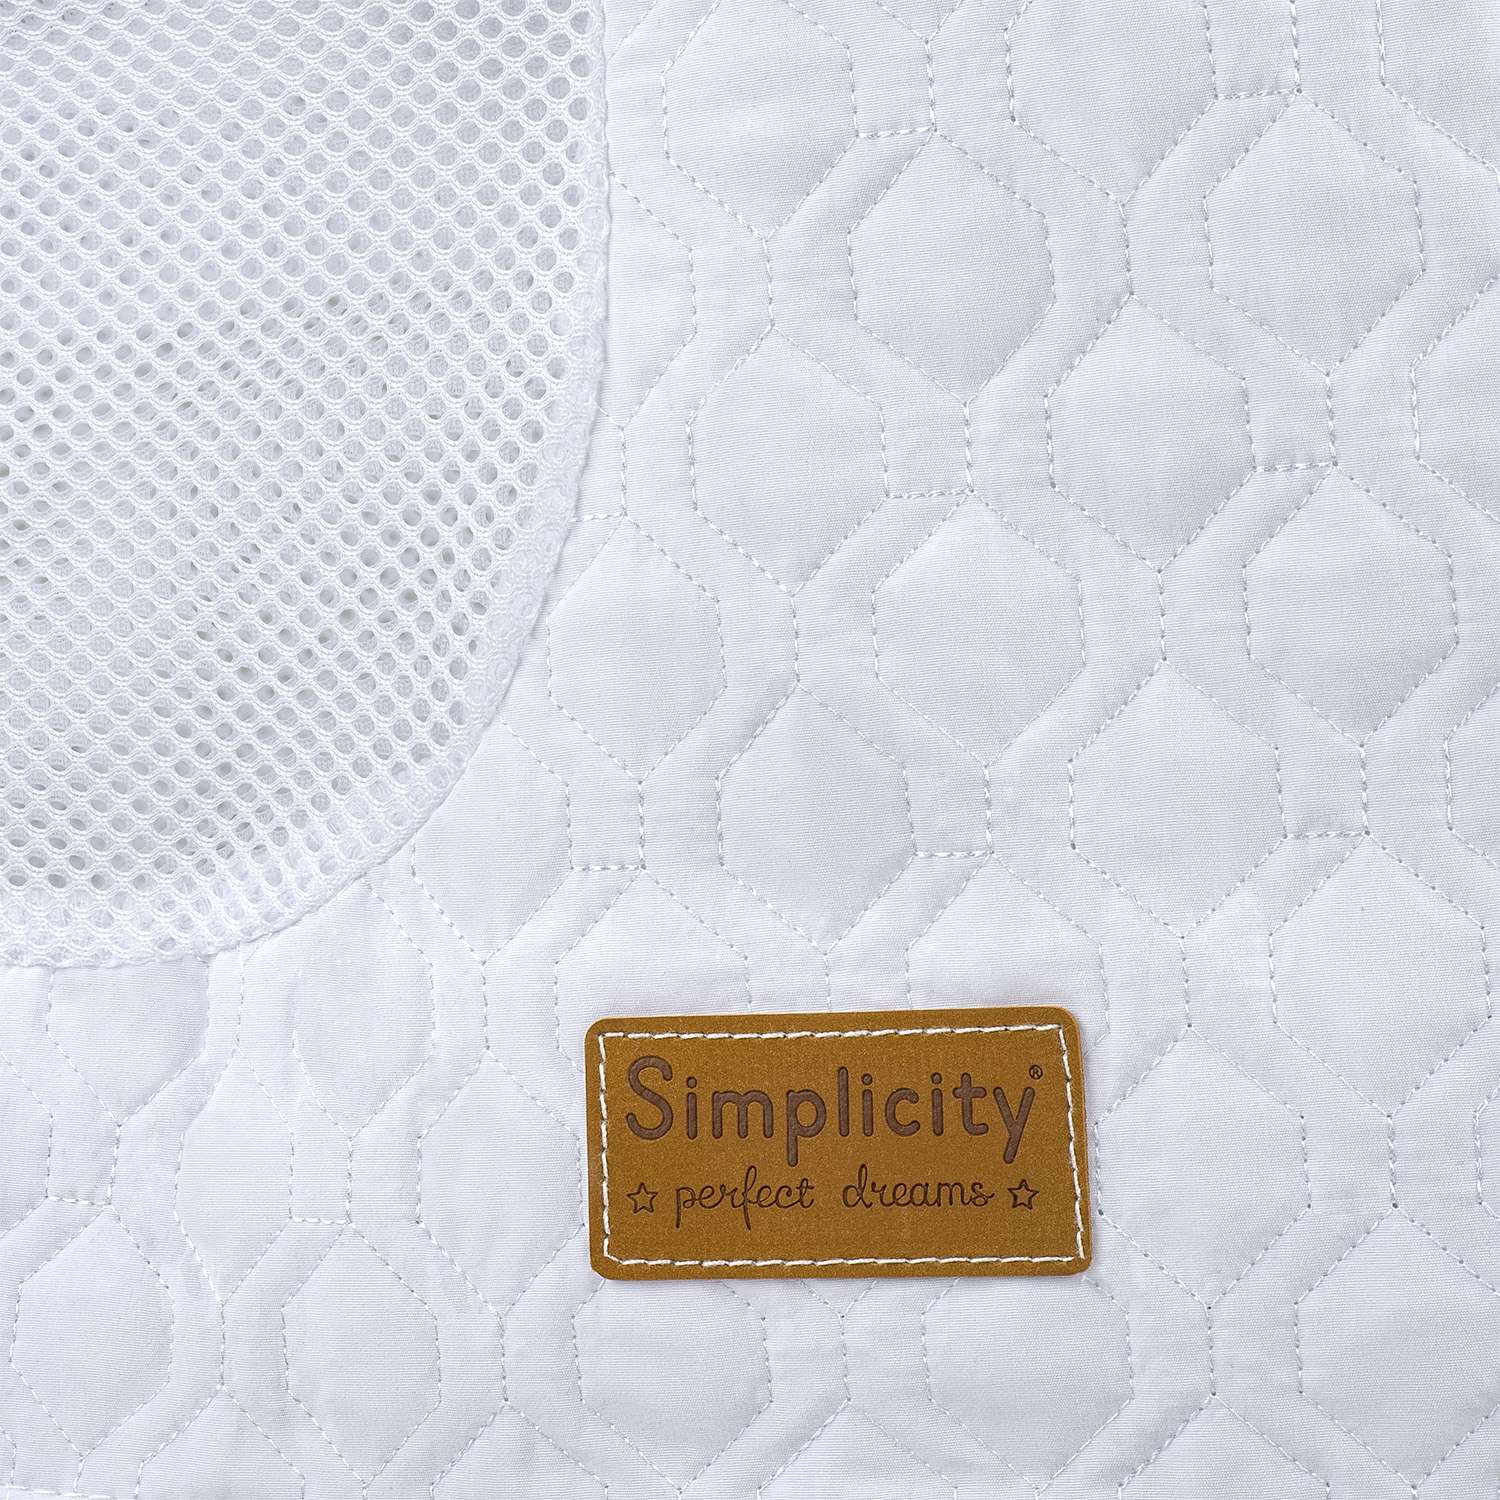 Колыбель-кроватка Simplicity GL4090 Elite romby white - фото 26